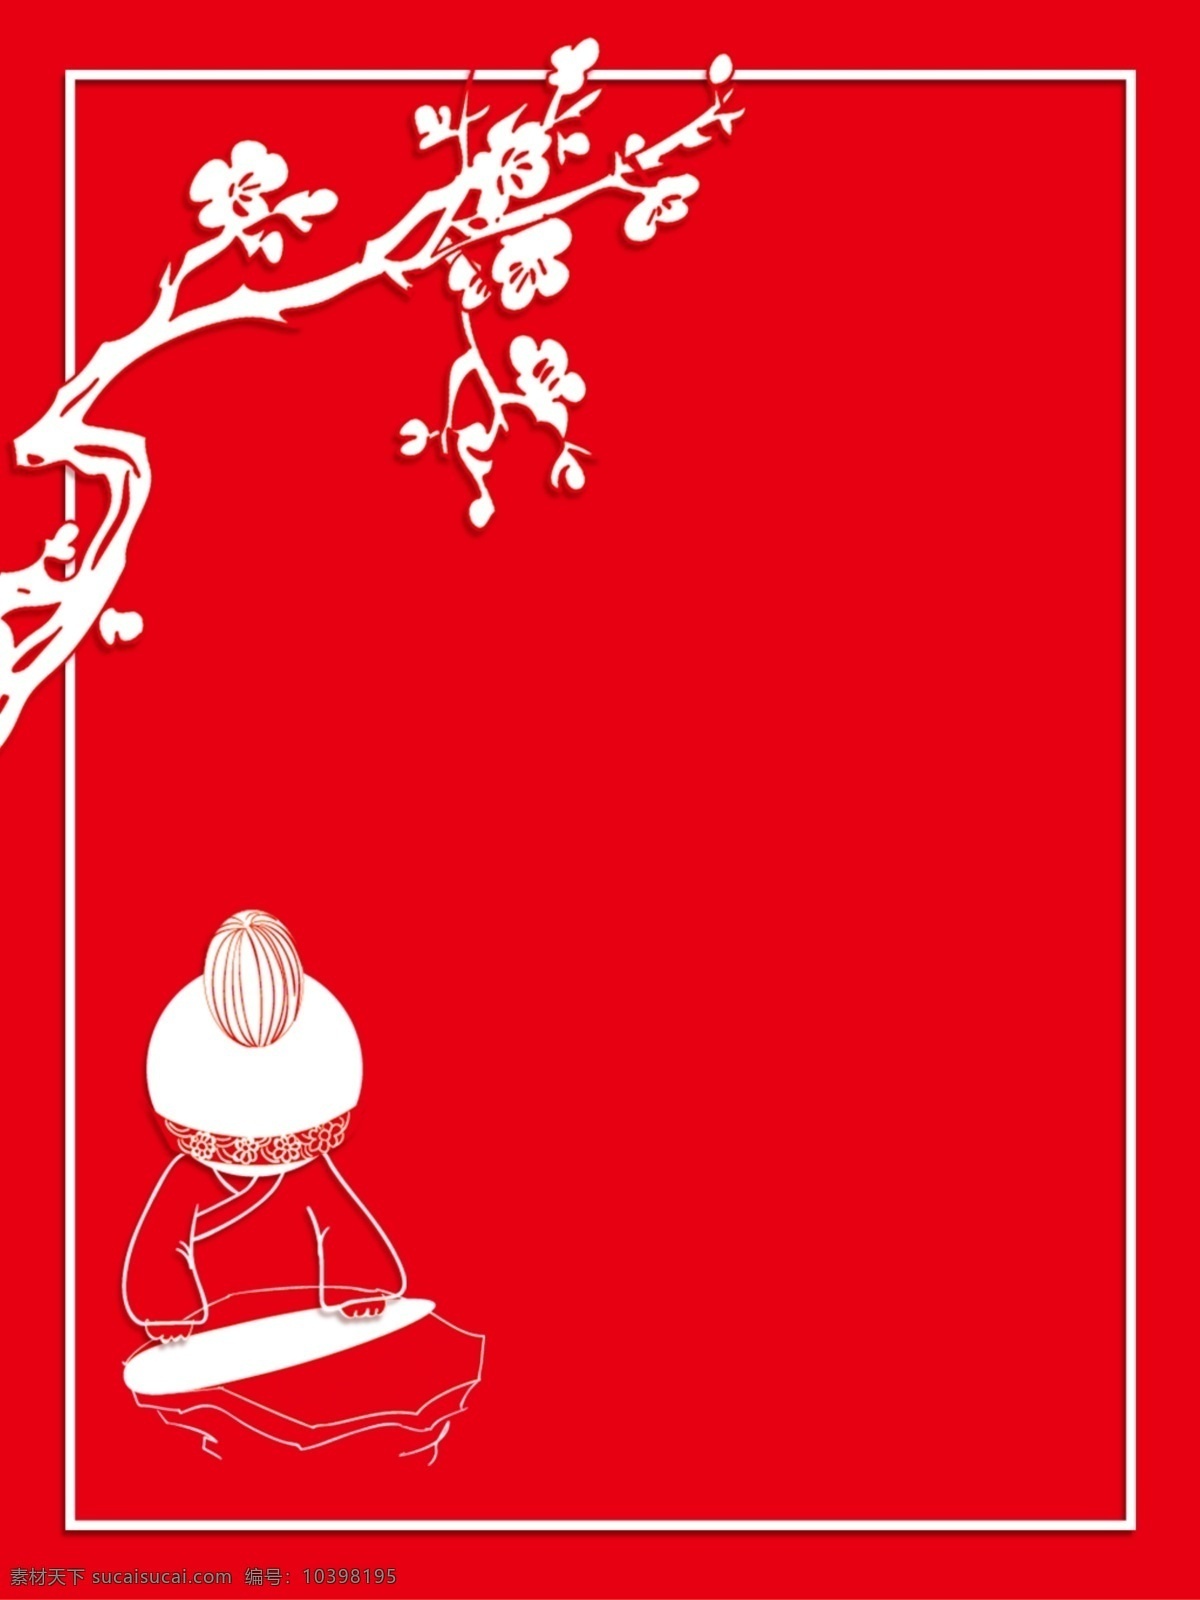 原创 中国 风 剪纸 背景 红色背景 中国风 剪纸背景 人物剪纸 梅花